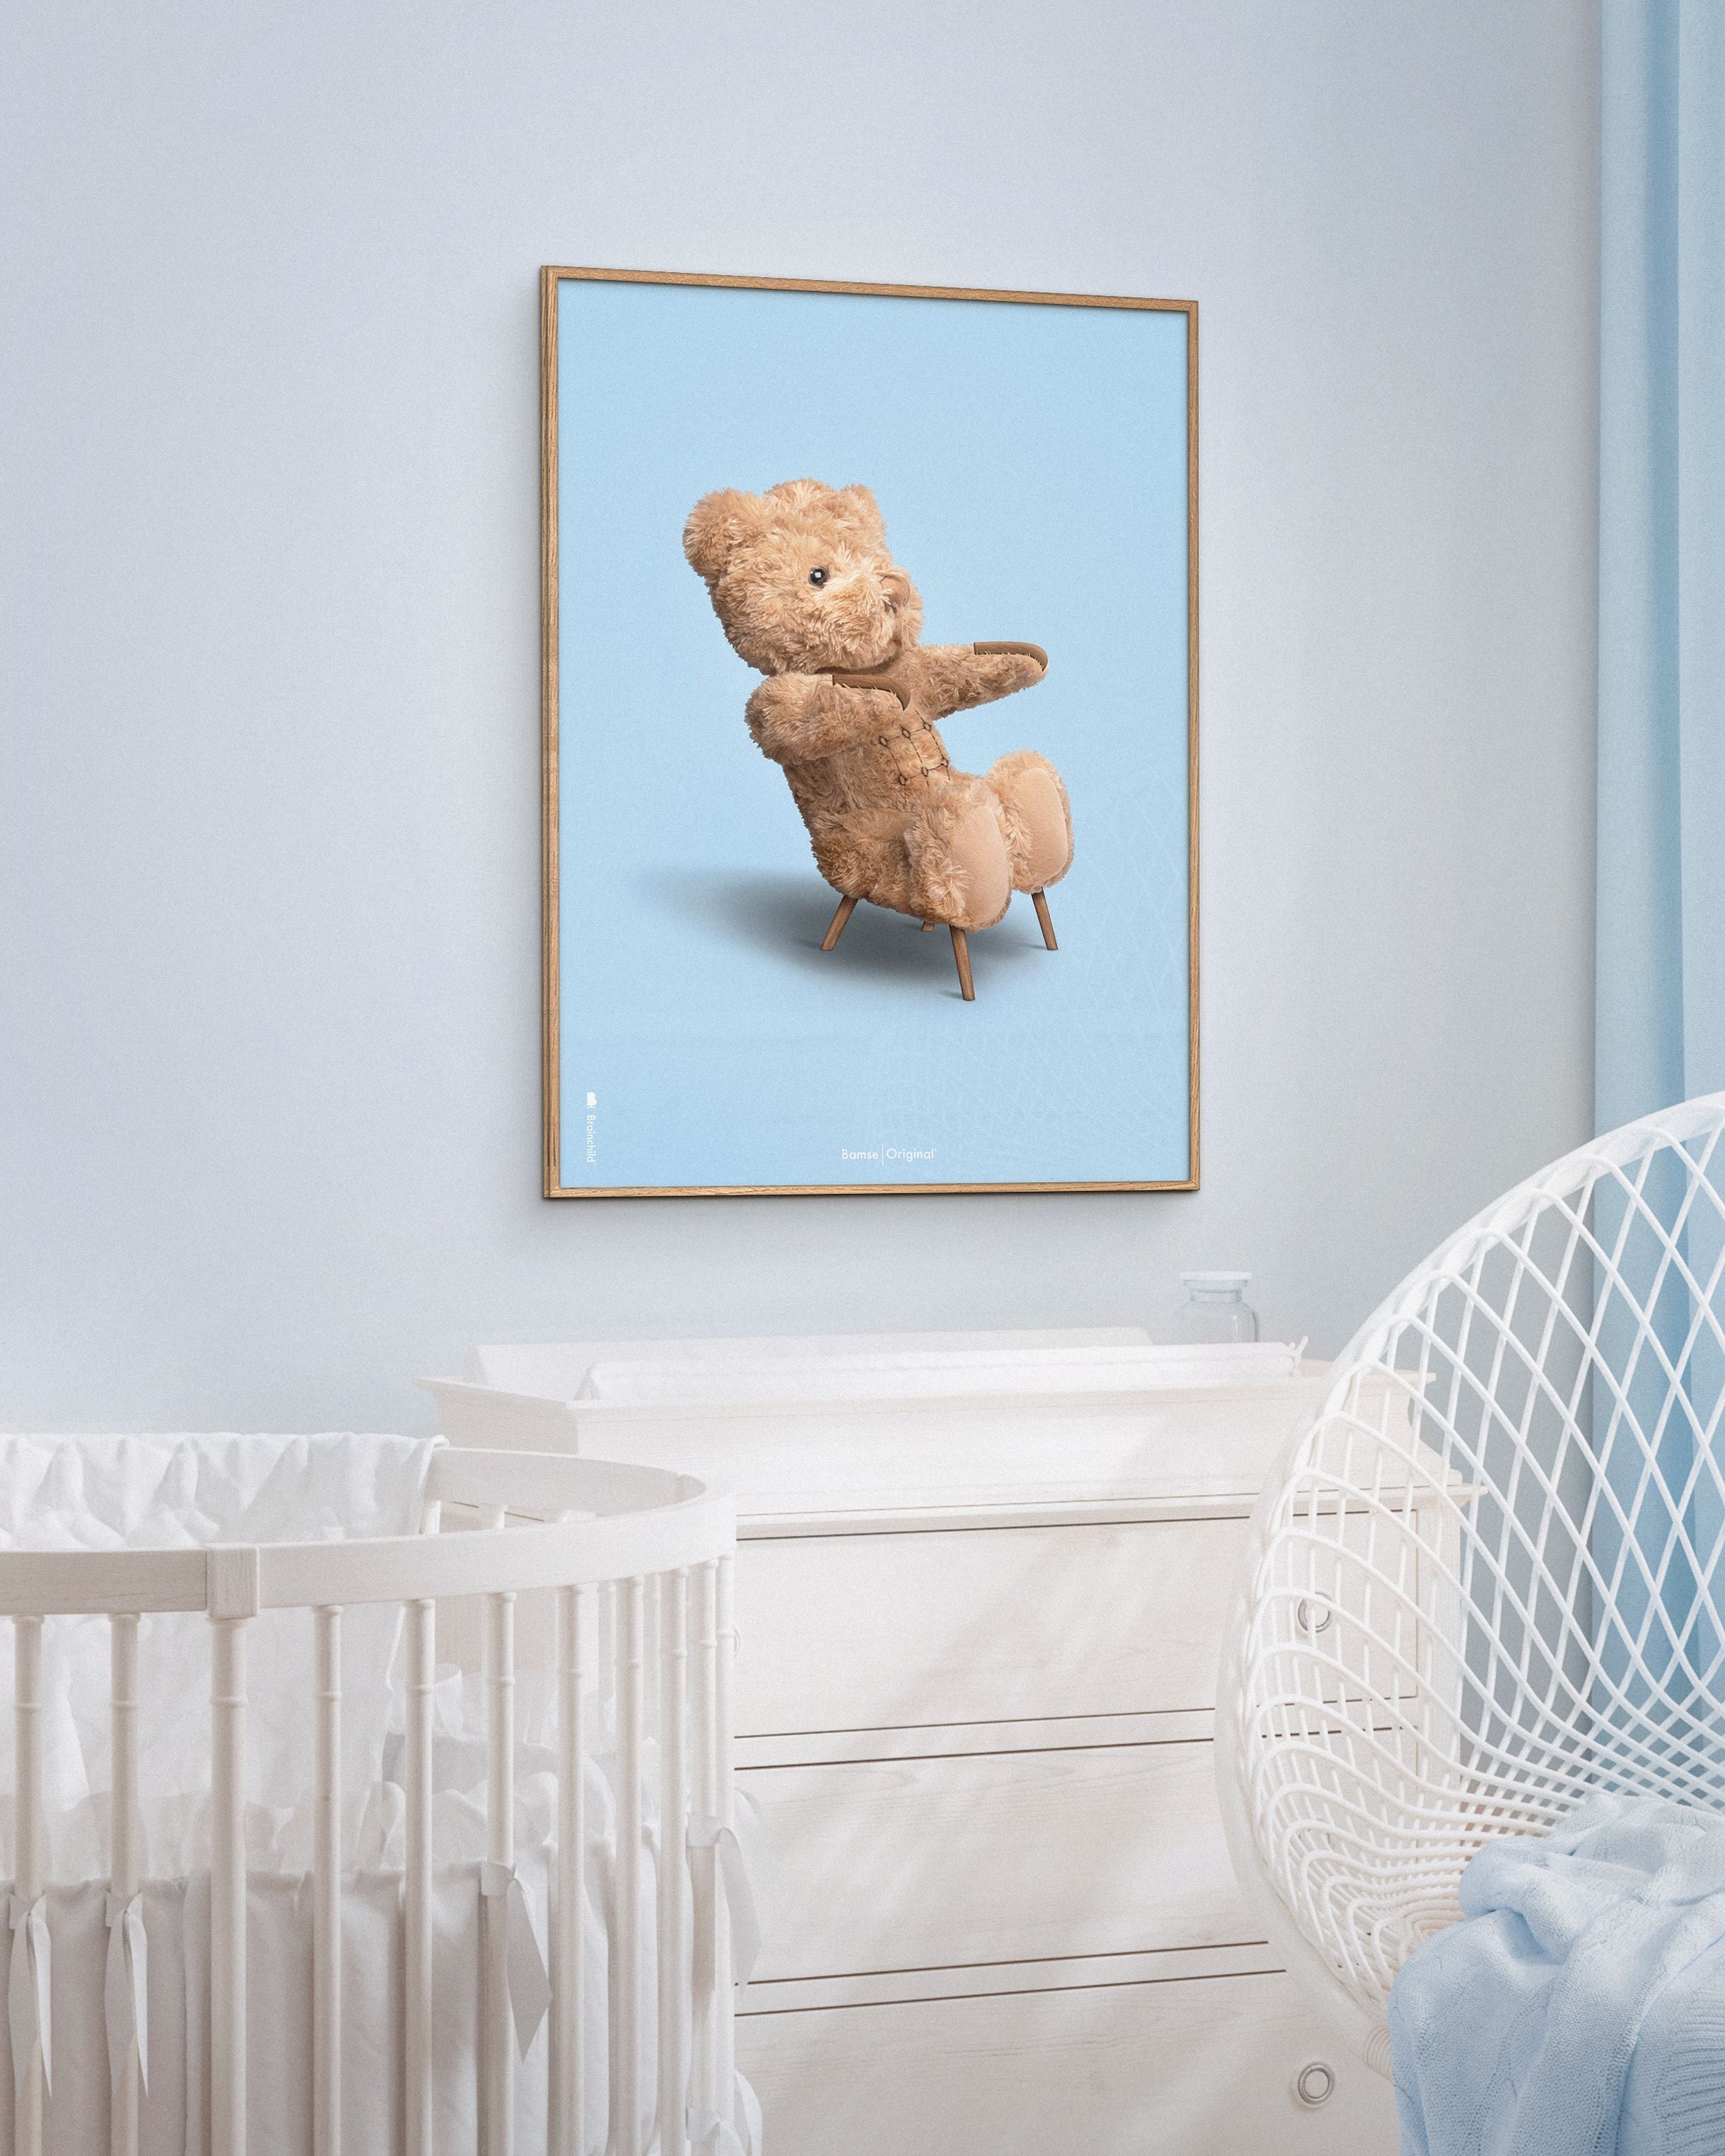 Brainchild Teddybär Classic Posterrahmen aus schwarz lackiertem Holz A5, hellblauer Hintergrund